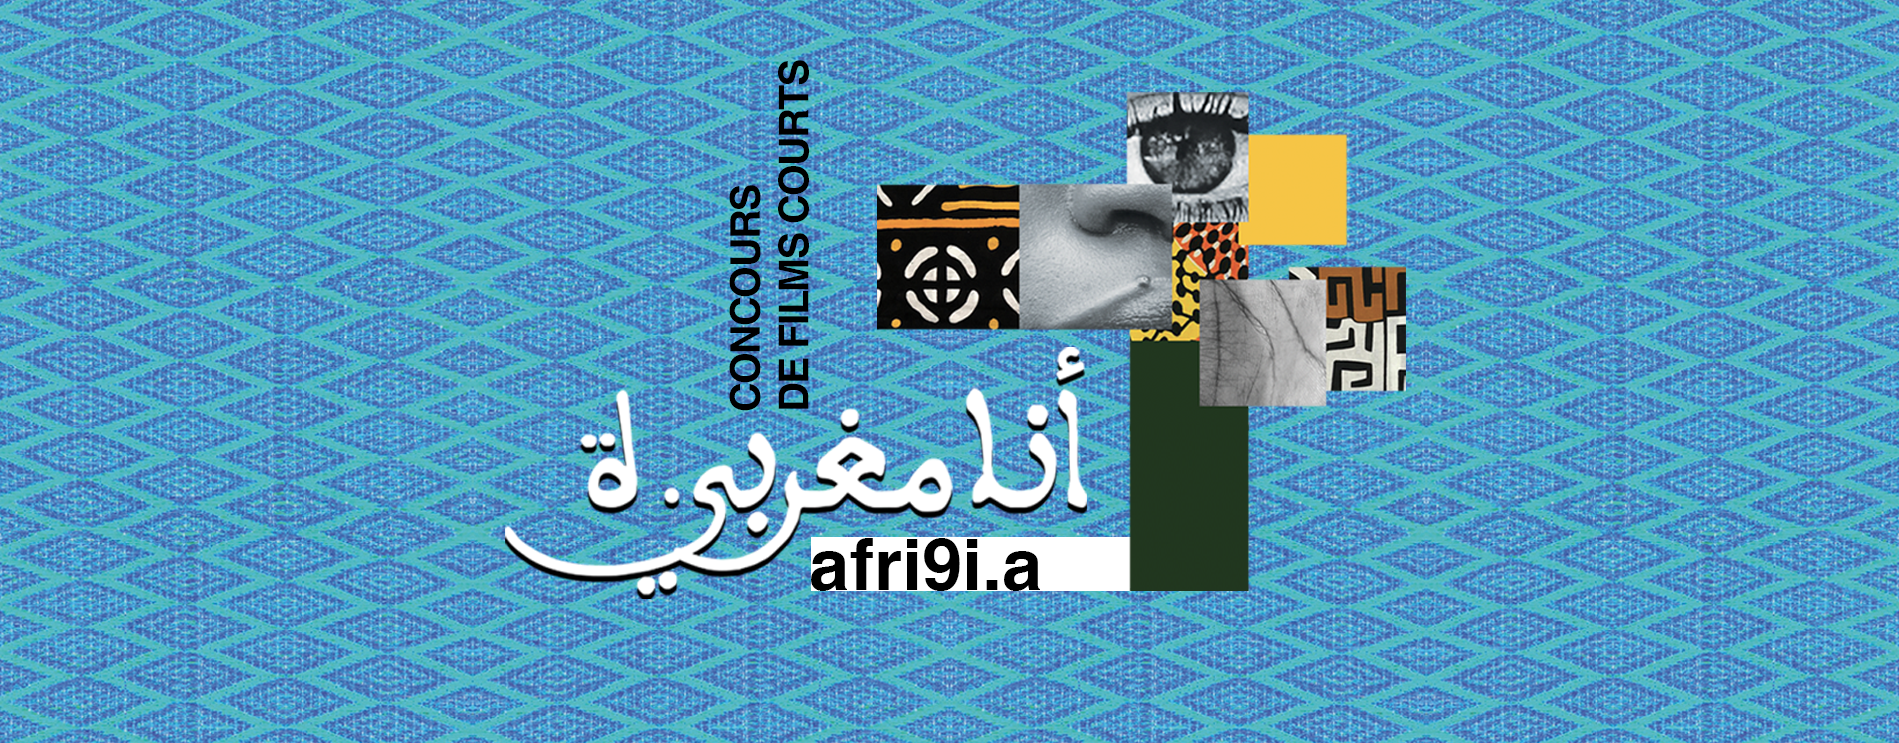 Lancement du concours de films courts Ana maghribi.a 2021 sur le thème "Afri9i.a"